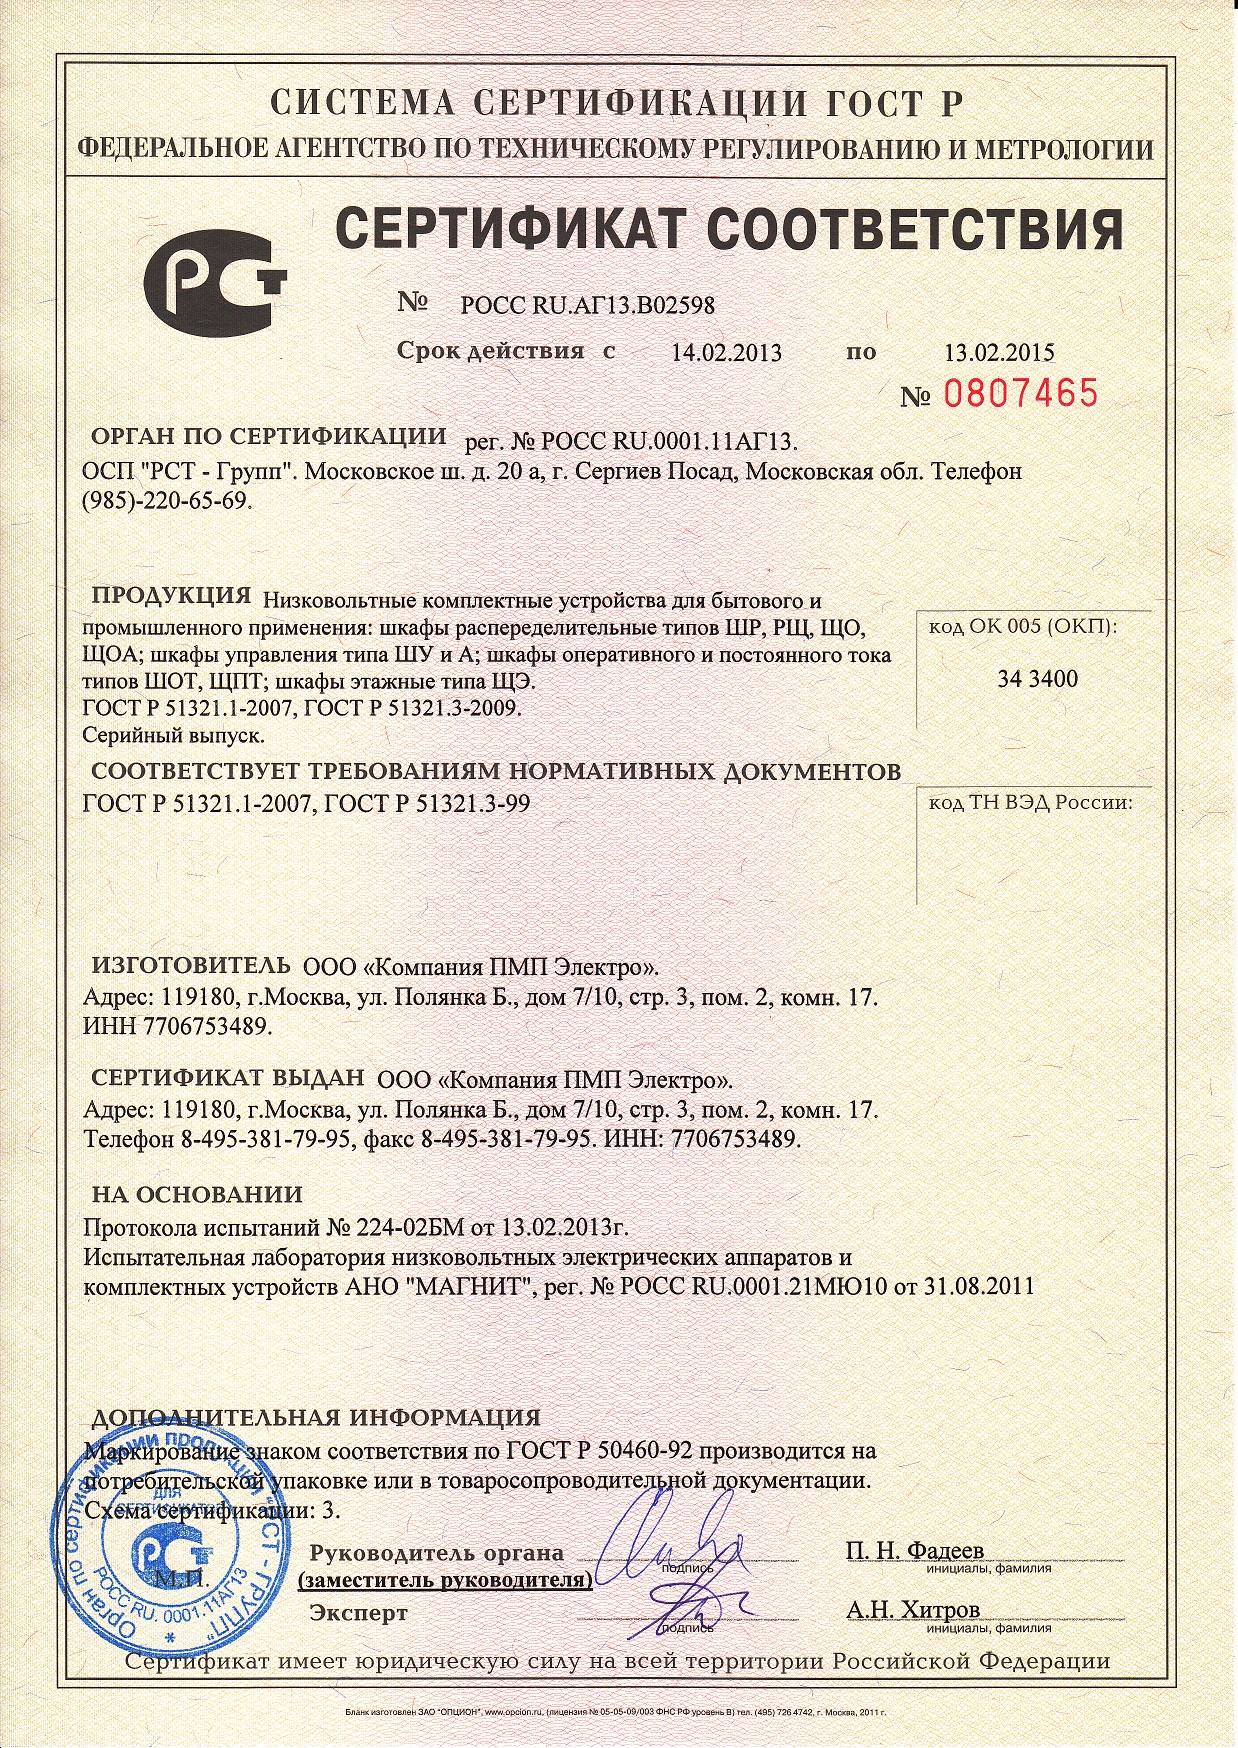 Сертификат соответствия №2, ООО 